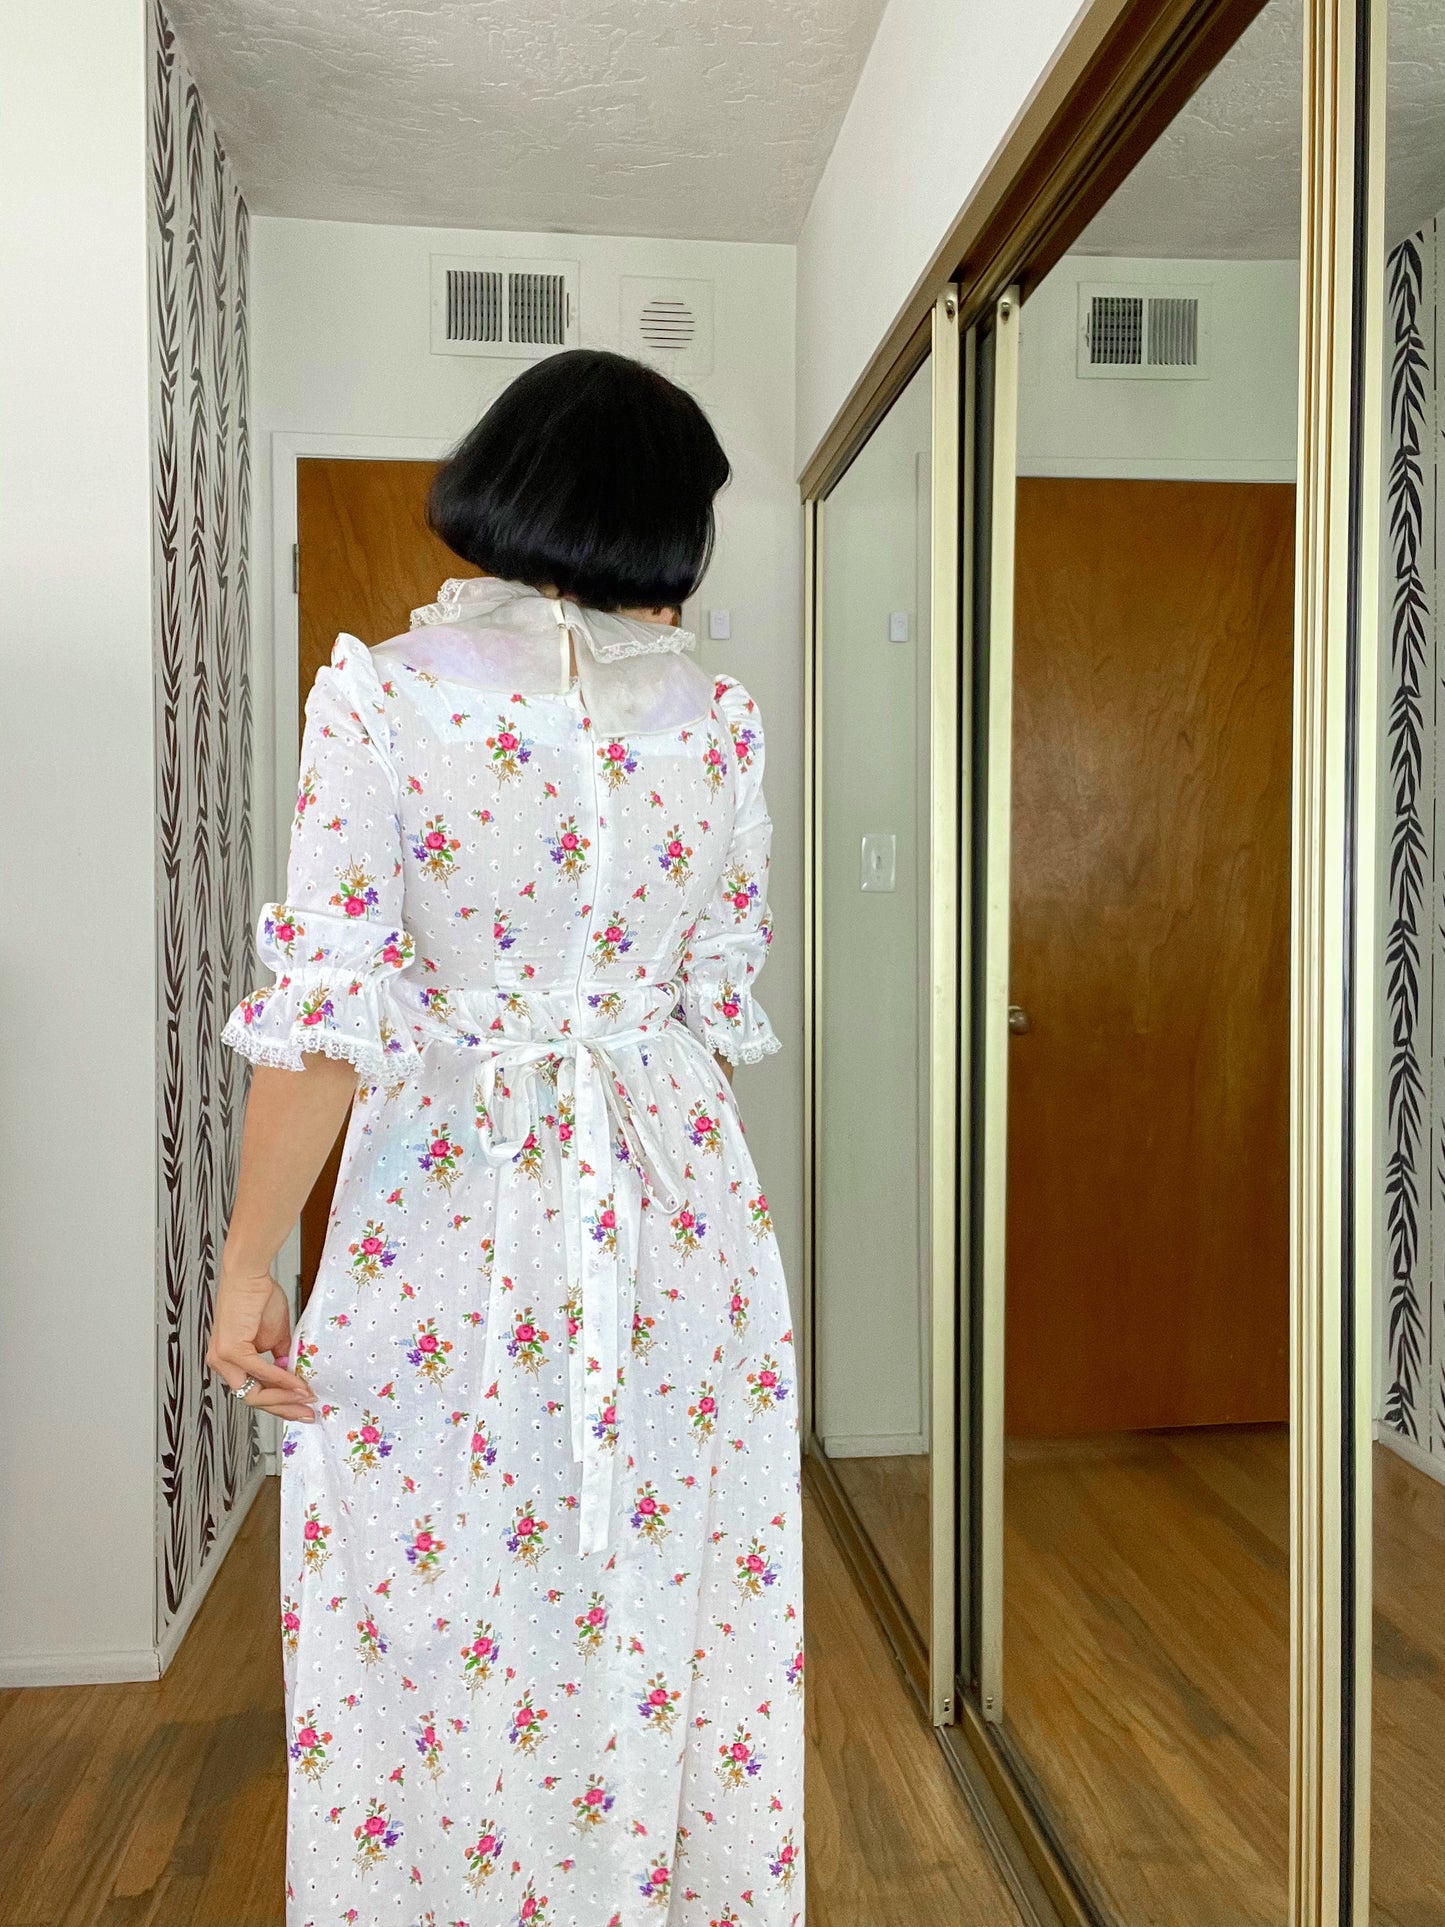 Vintage 1960s / 1970s floral Cotton Empire Waist Maxi Dress. Fits Sizes XXS-SM